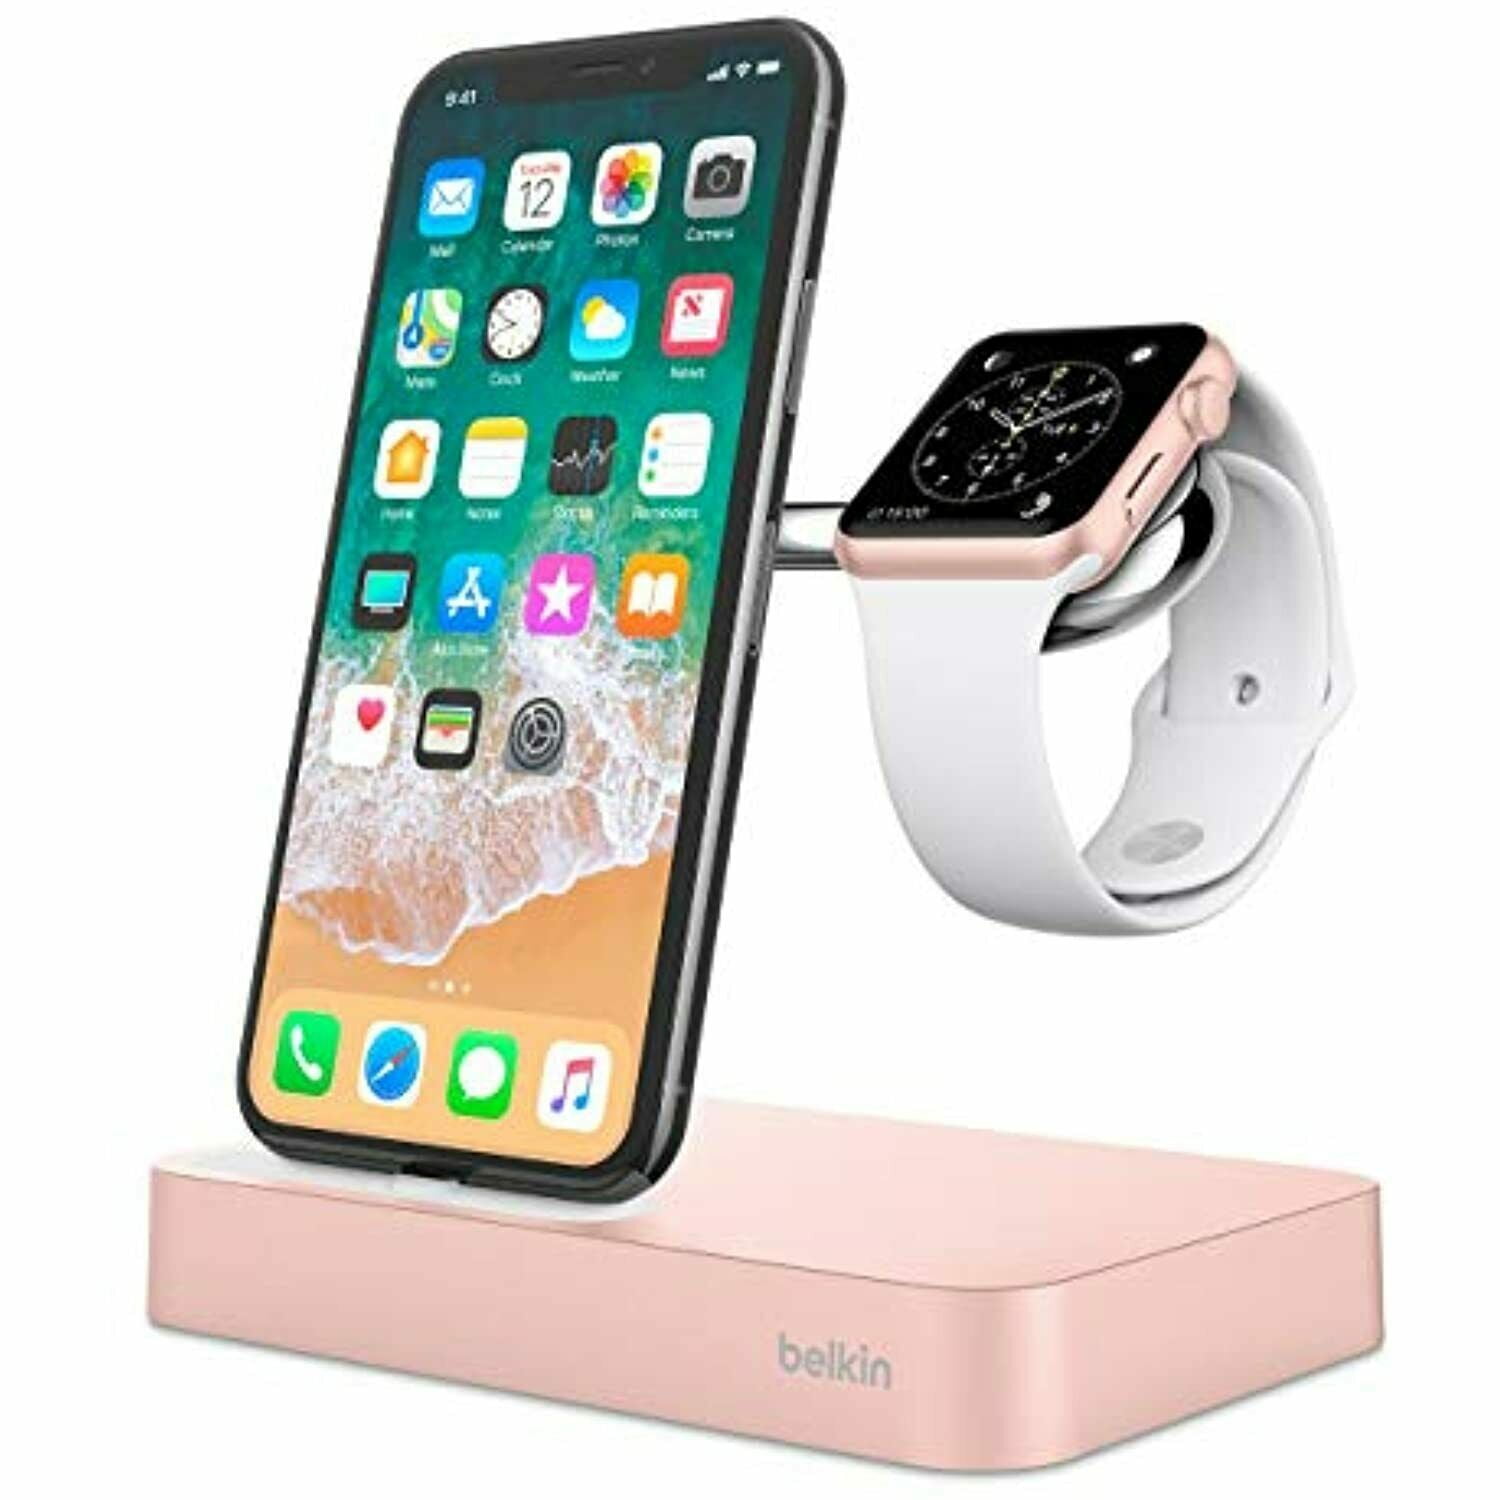 Зарядка для iphone watch. Док станция для Apple IWATCH И iphone. Belkin док станция для iphone. Зарядка для Apple IWATCH И iphone. Charge Dock for Apple watch iphone model f8j183 Belkin.